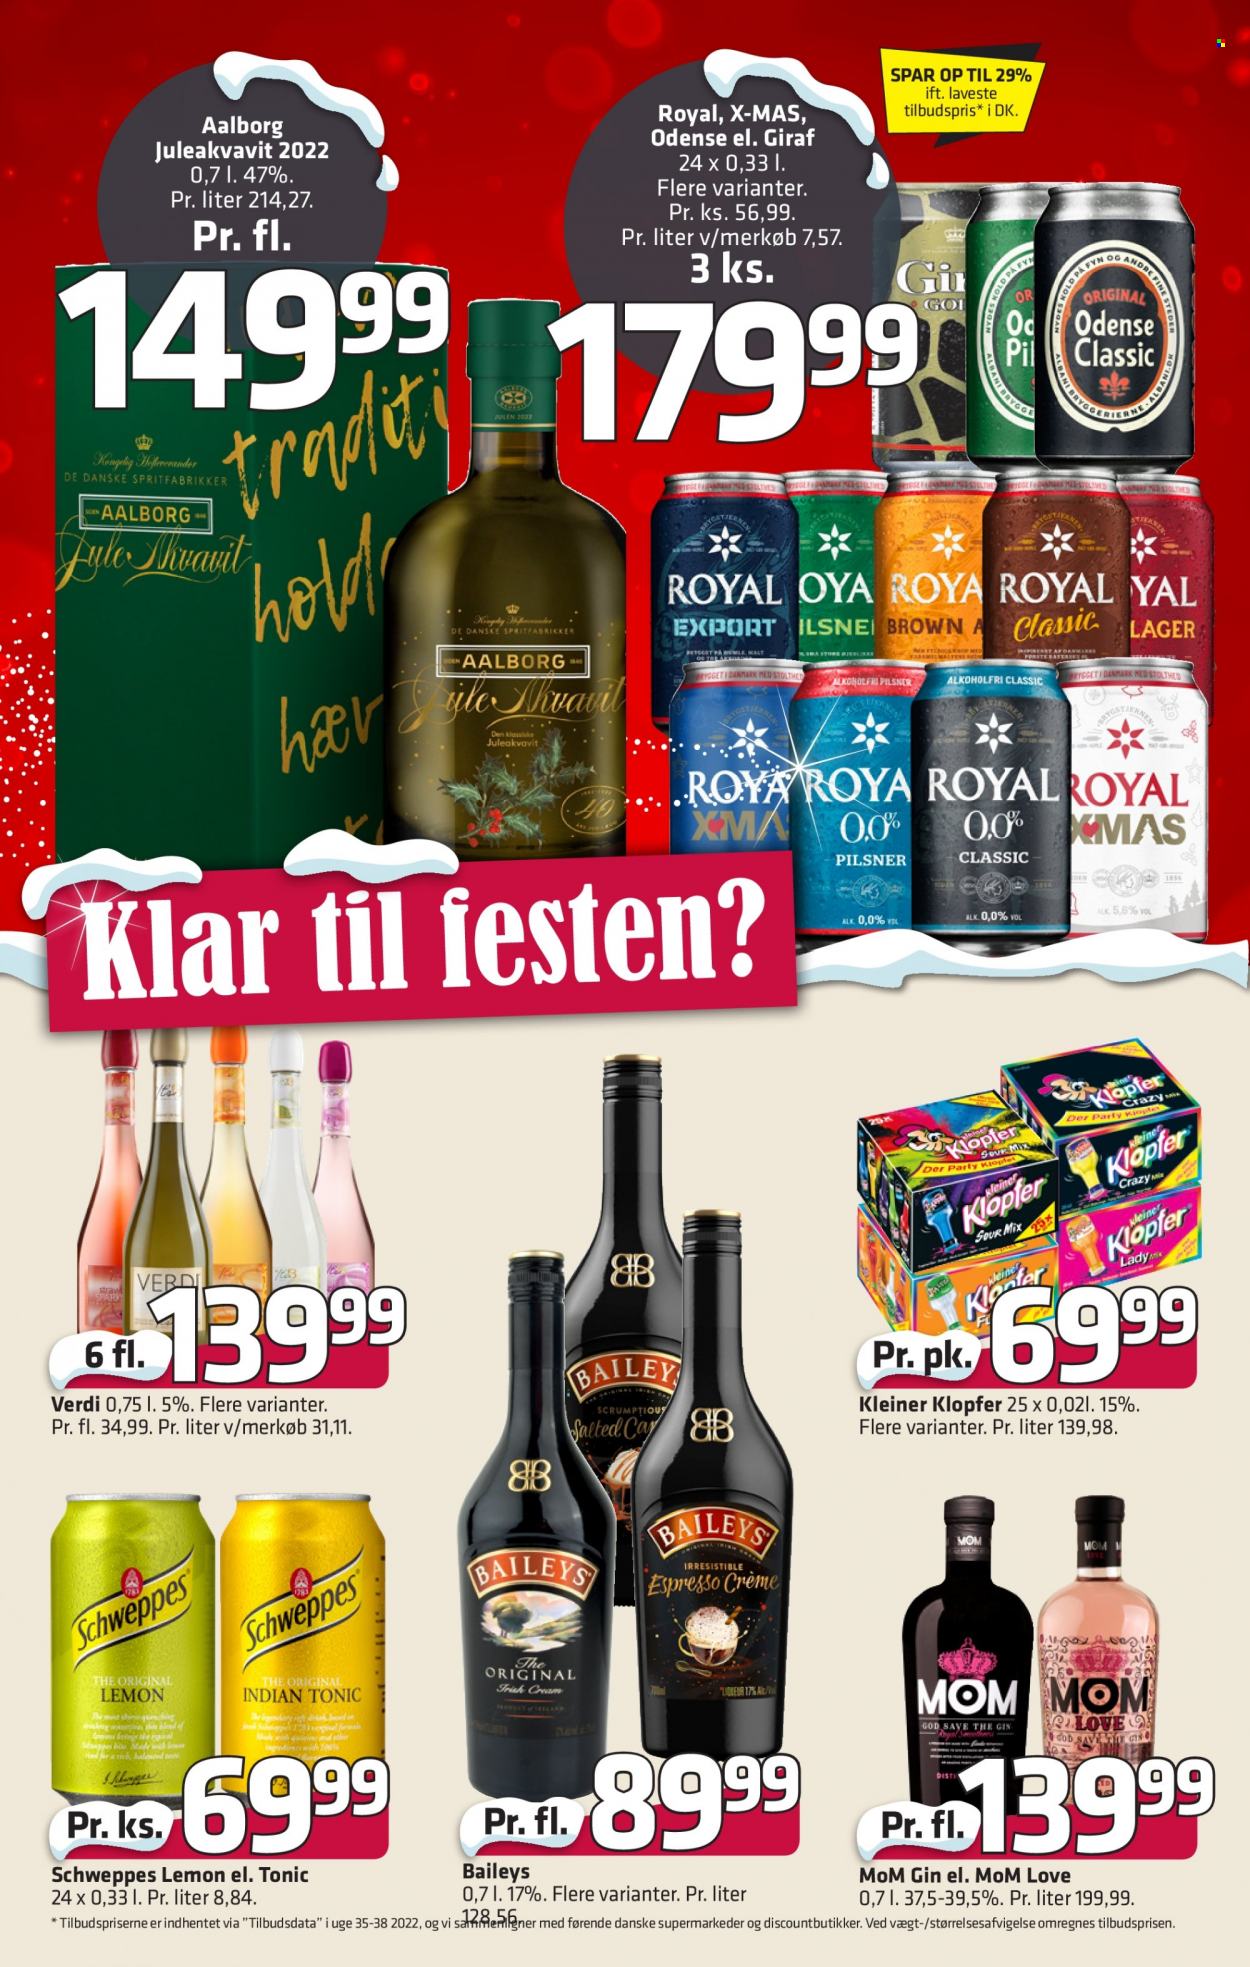 thumbnail - Fleggaard tilbud  - 9.11.2022 - 29.11.2022 - tilbudsprodukter - øl, Schweppes, tonic, espresso, Aalborg, gin, Bailey's. Side 30.